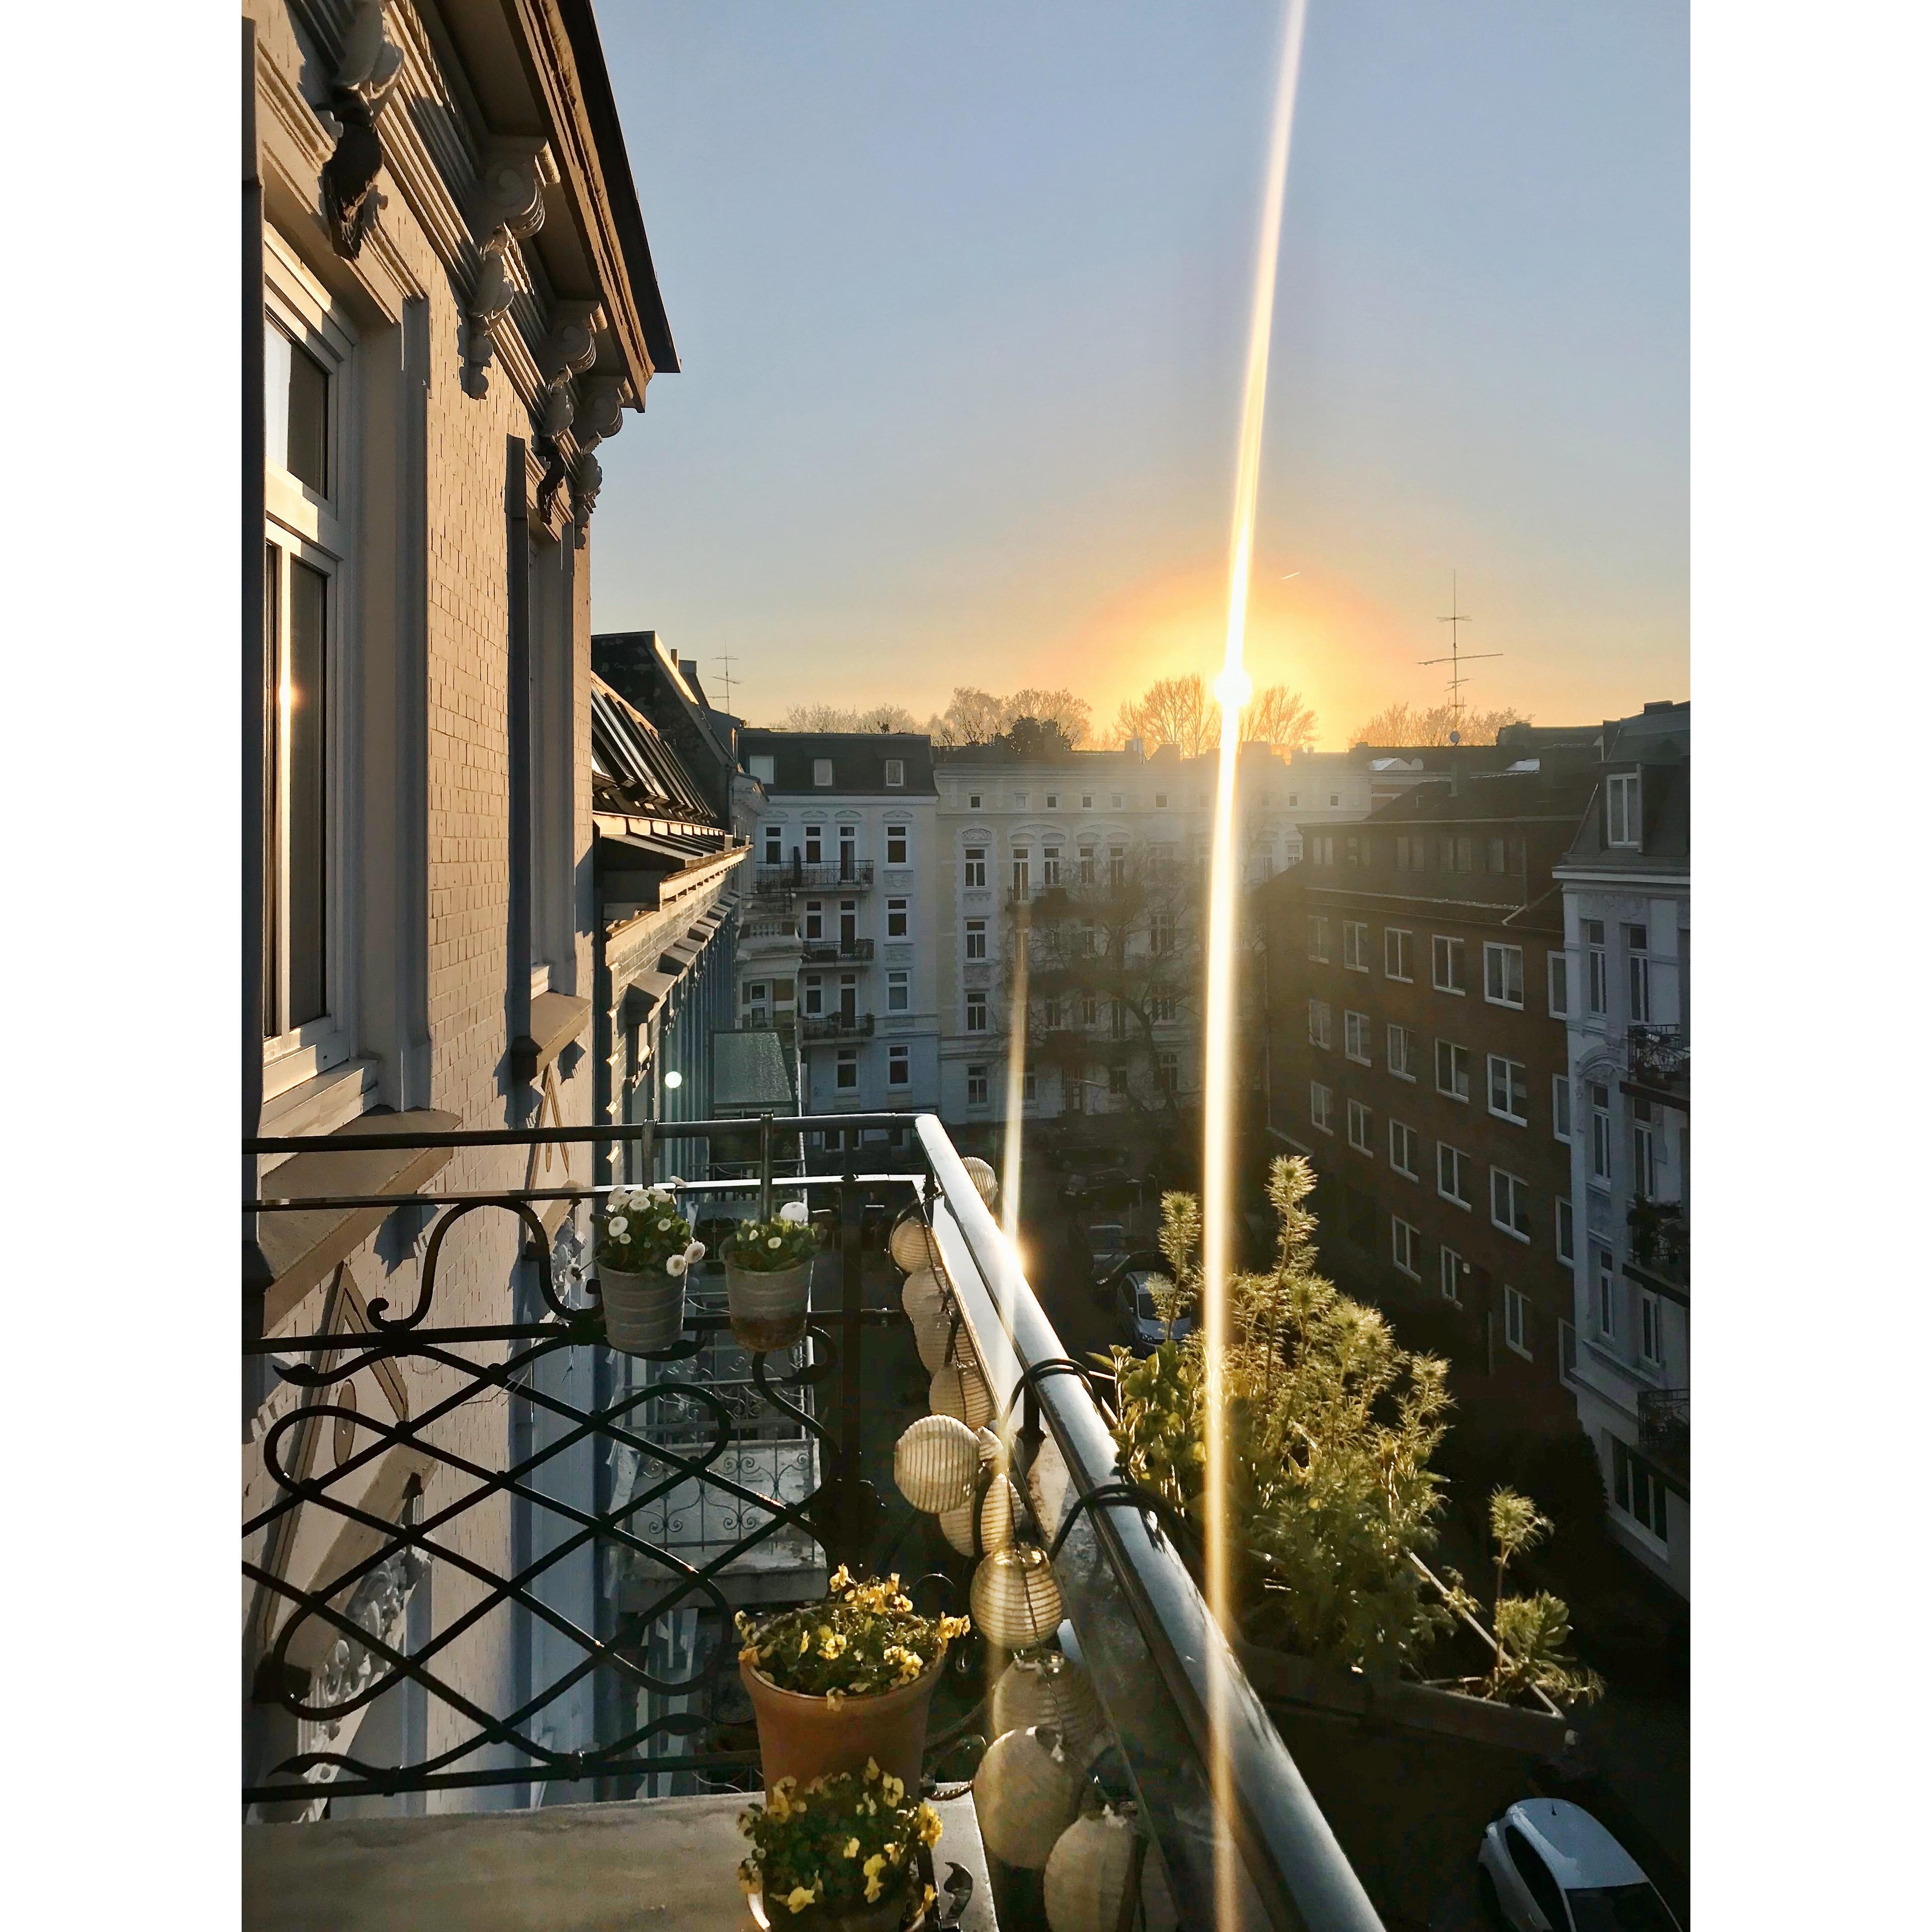 Endlich wieder Sonne auf‘m Balkon. Zum Glück, das hebt die Laune ungemein! #Balkonblick #Altbauliebe #Sonne